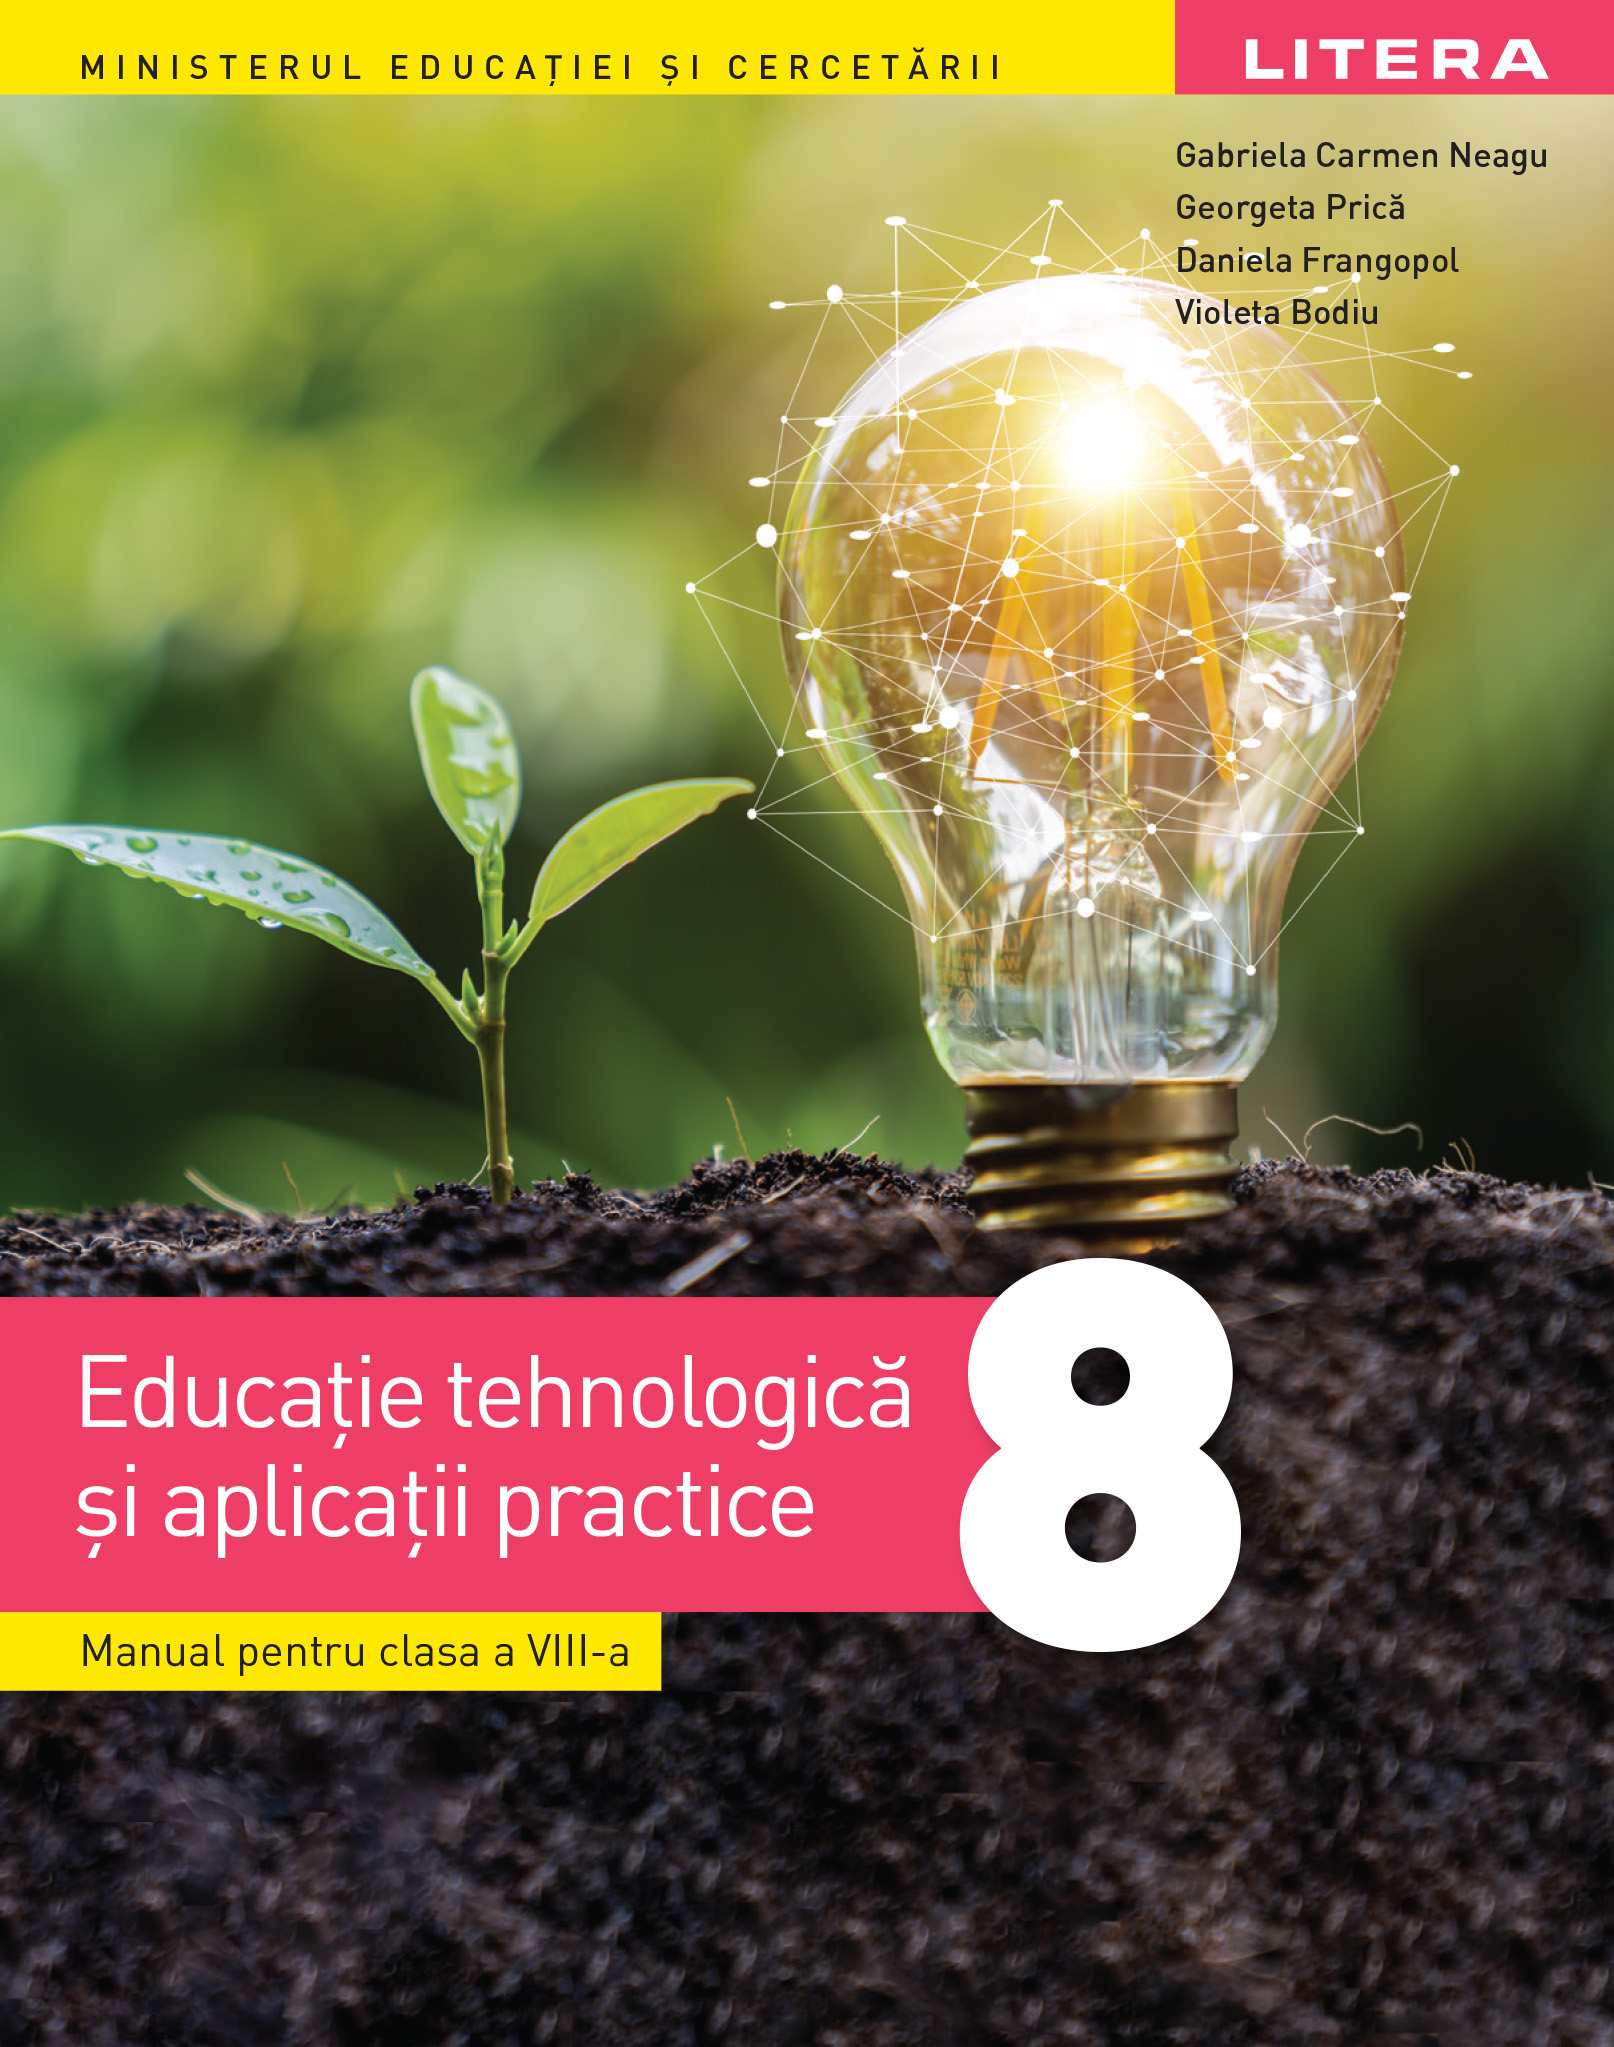 Educatie tehnologica si aplicatii practice - Manual pentru clasa a VIII-a